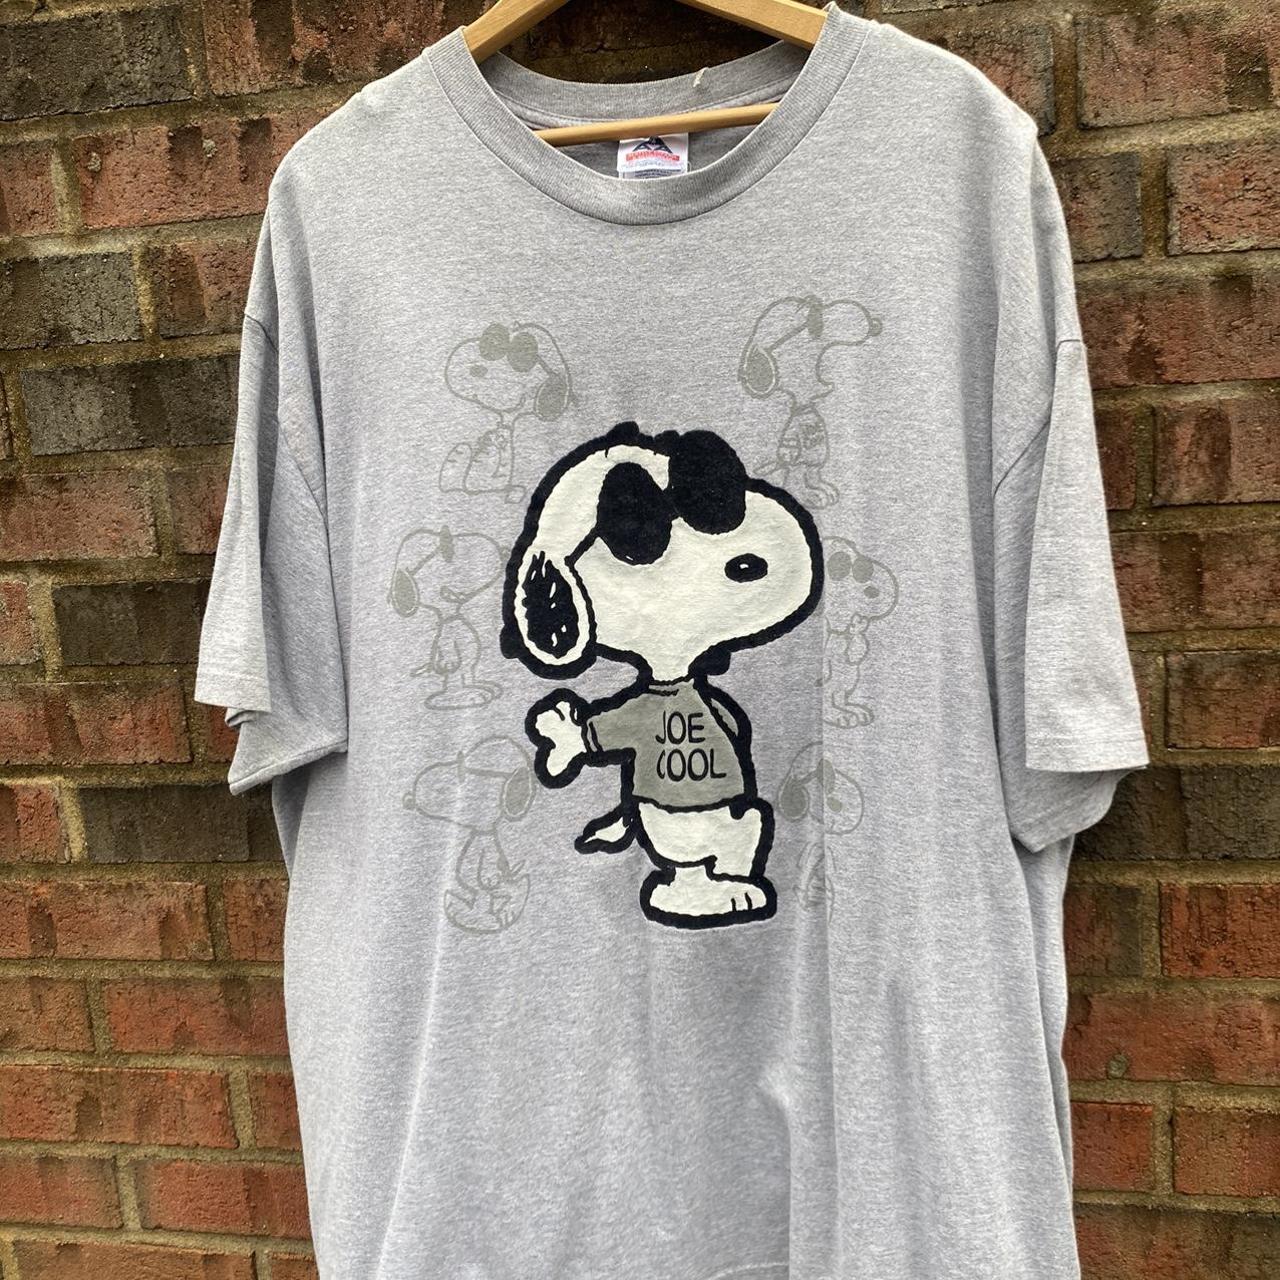 Vintage 2000’s Peanuts Snoopy Joe Cool Solo Promo... - Depop